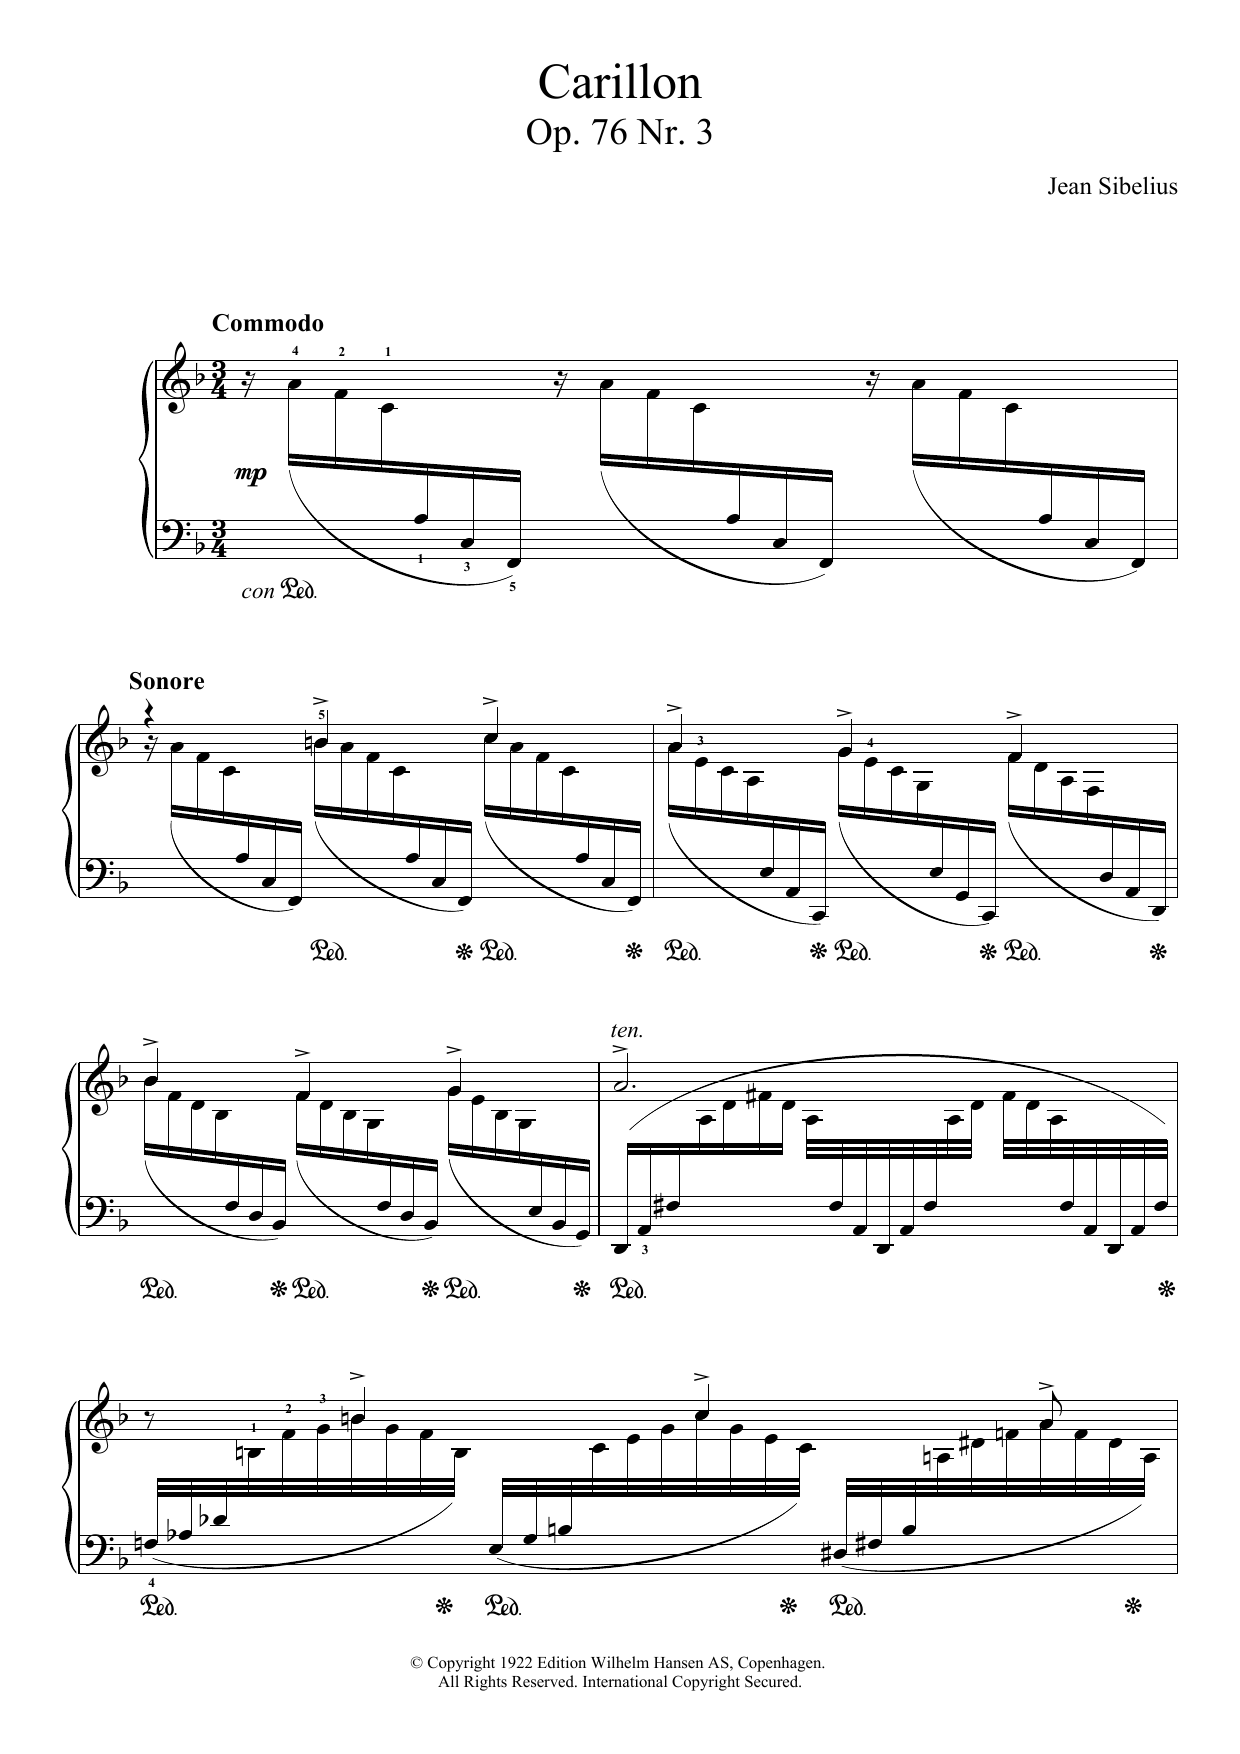 Download Jean Sibelius 13 Morceaux, Op.76 - III. Carillon Sheet Music